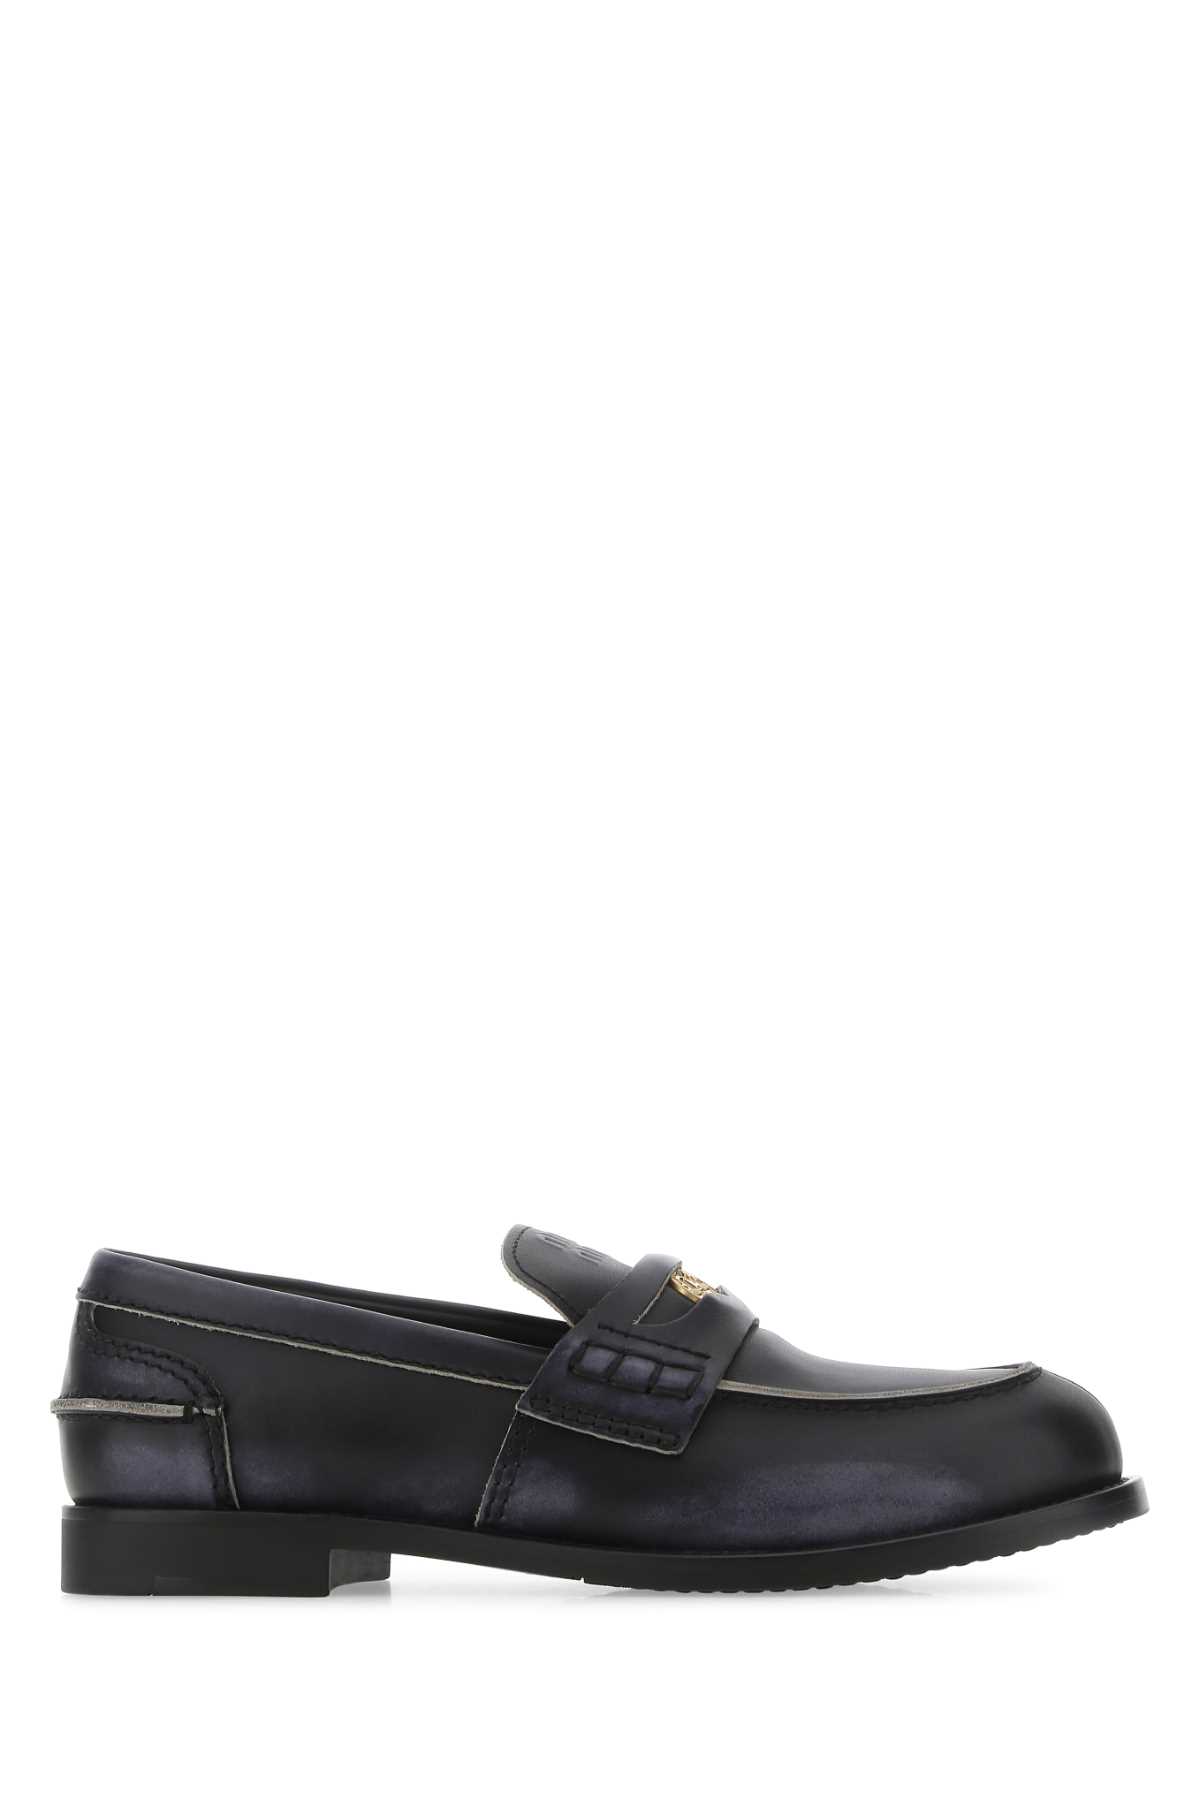 Shop Miu Miu Black Leather Loafers In F0002